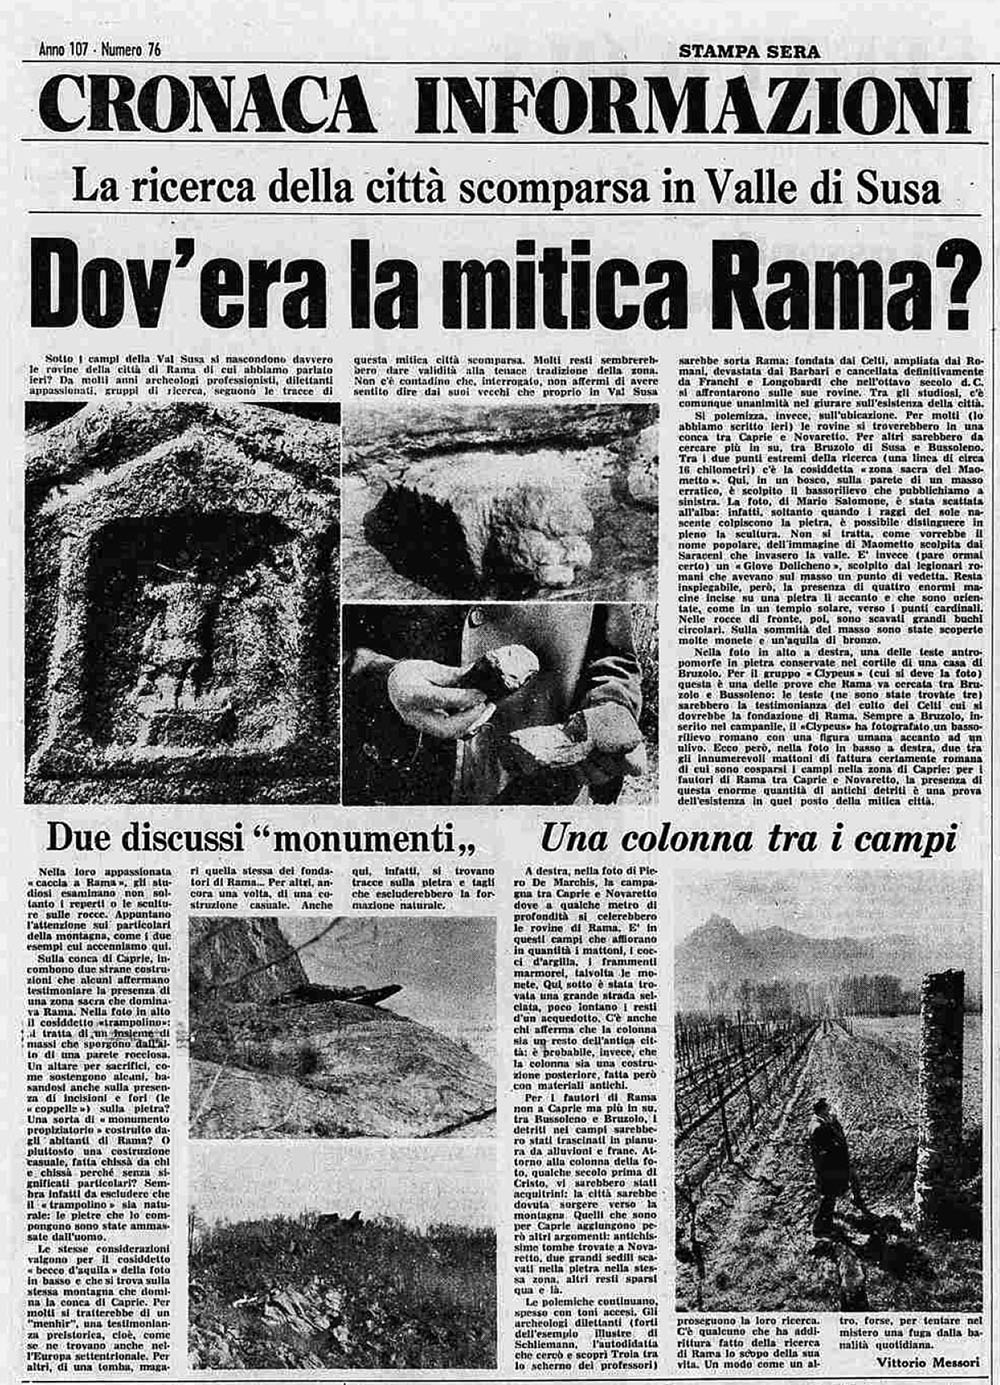 Dov'era la mitica rama? Stampa Sera, 8 aprile 1975 (Archivio Storico La Stampa)